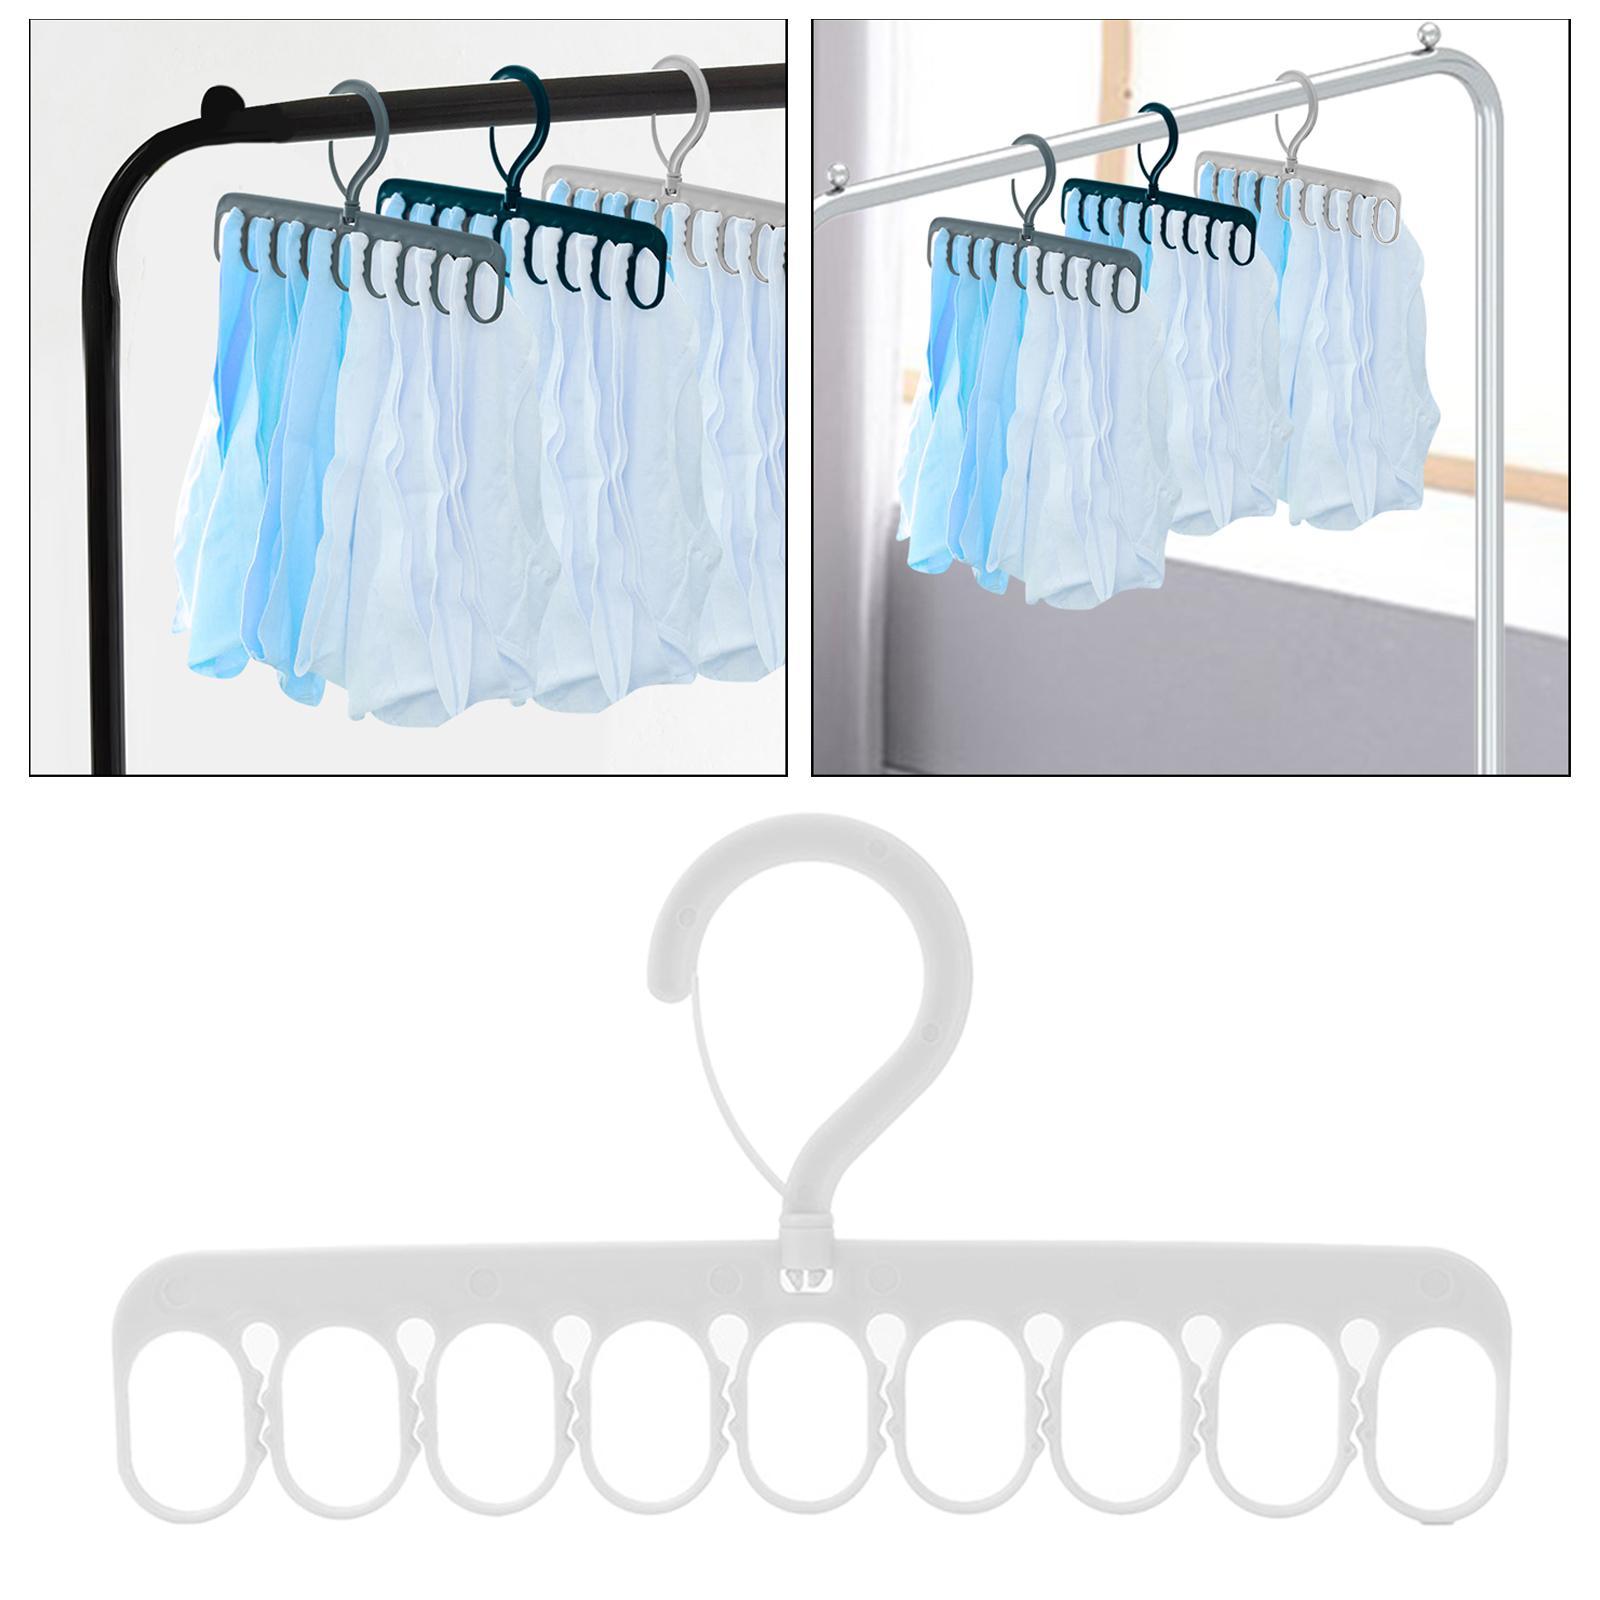 Portable Clothing Hanger Support Hanger Drying Hanger for Pants Socks Scarf